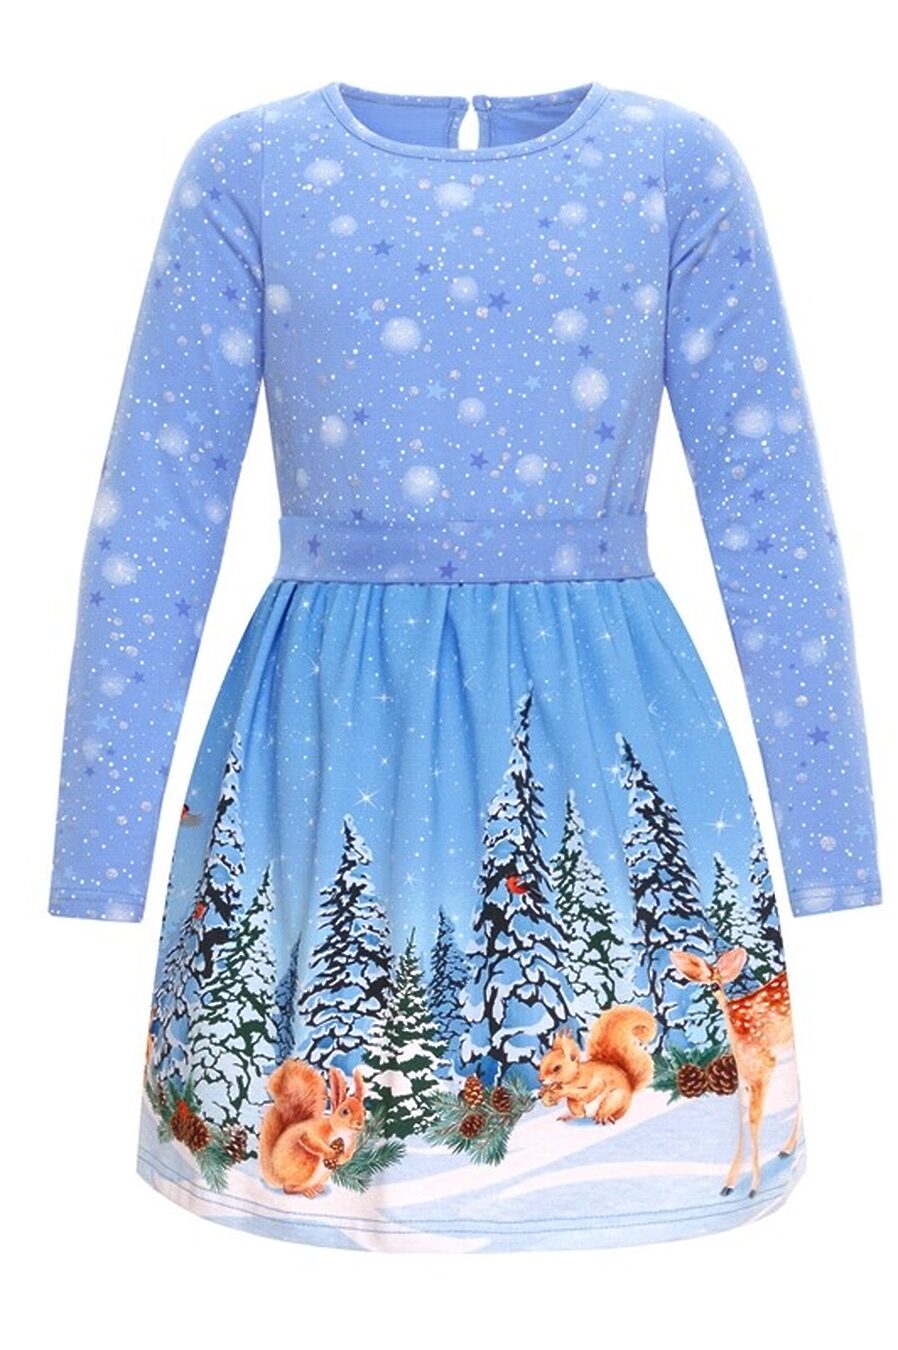 Платье для девочек АПРЕЛЬ 807638 купить оптом от производителя. Совместная покупка детской одежды в OptMoyo